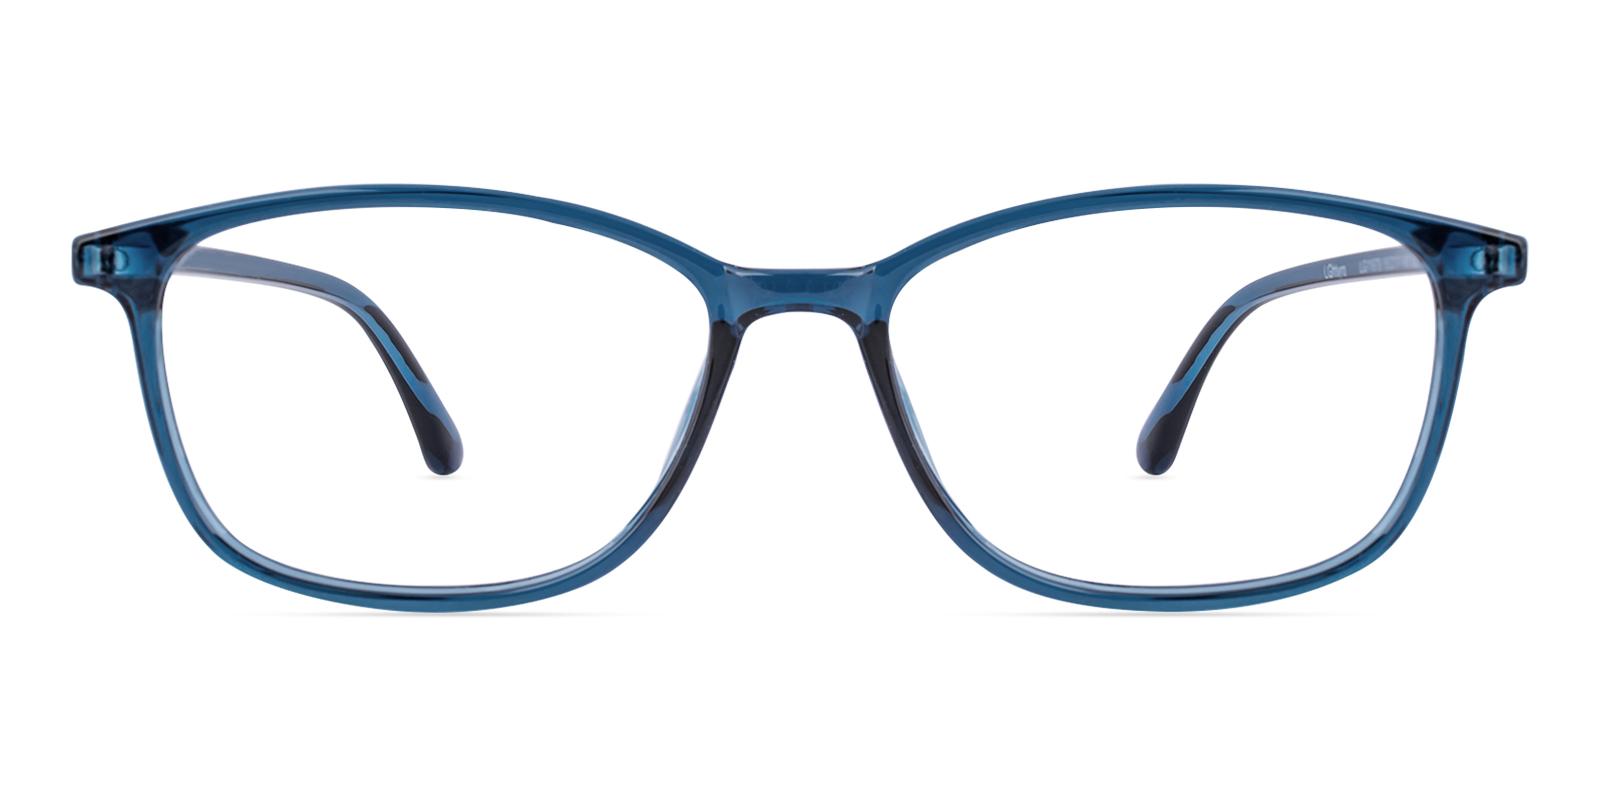 Teloain Blue TR Eyeglasses , UniversalBridgeFit , Lightweight Frames from ABBE Glasses